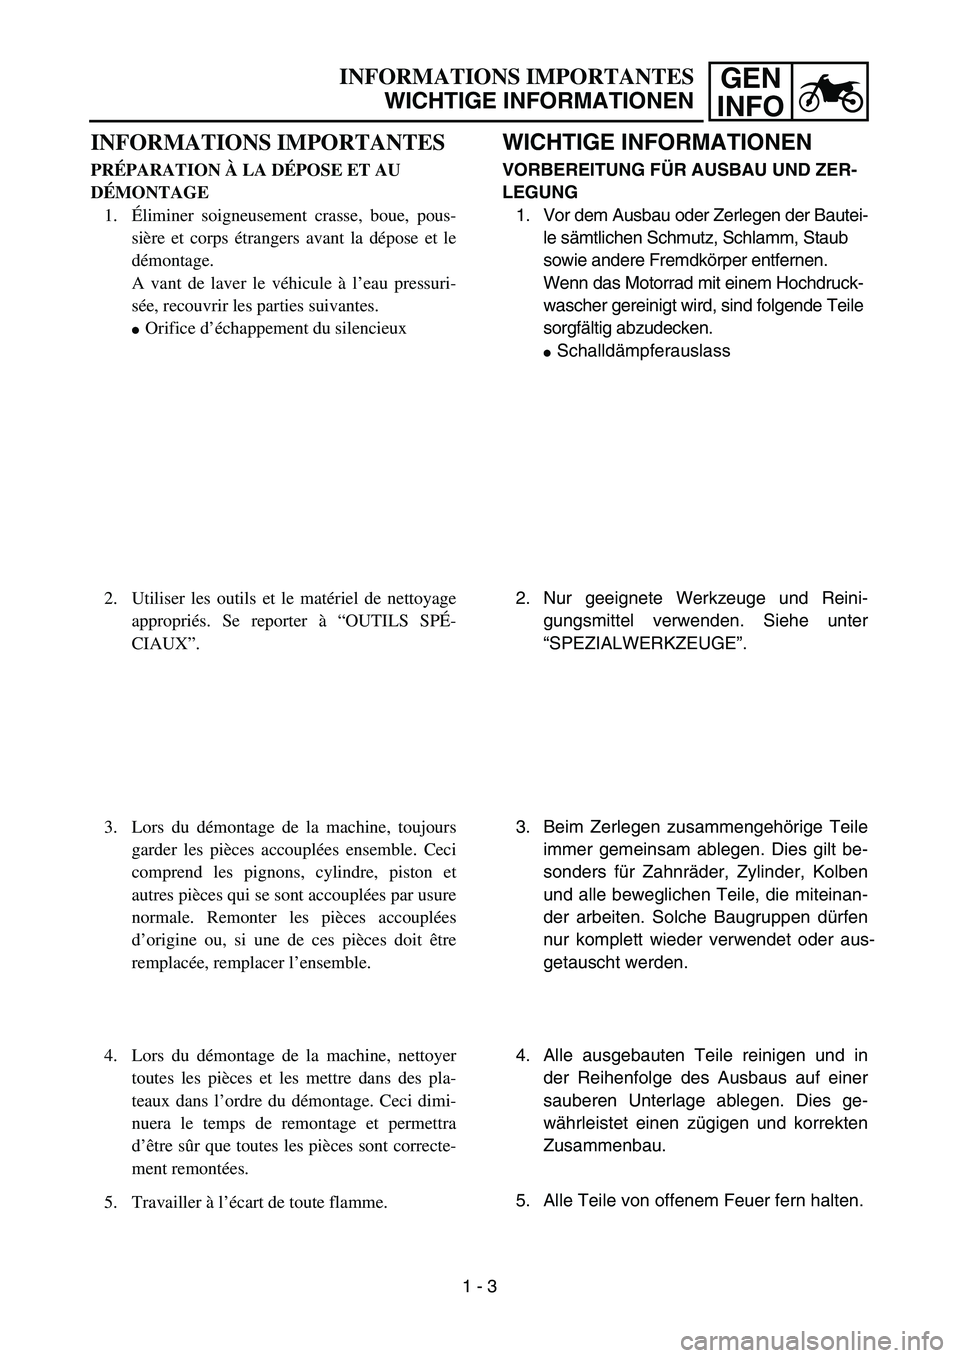 YAMAHA TTR125 2007  Notices Demploi (in French) GEN
INFOINFORMATIONS IMPORTANTES
WICHTIGE INFORMATIONEN
WICHTIGE INFORMATIONEN
VORBEREITUNG F ÜR AUSBAU UND ZER-
LEGUNG 1. Vor dem Ausbau oder Zerlegen der Bautei- le sämtlichen Schmutz, Schlamm, St